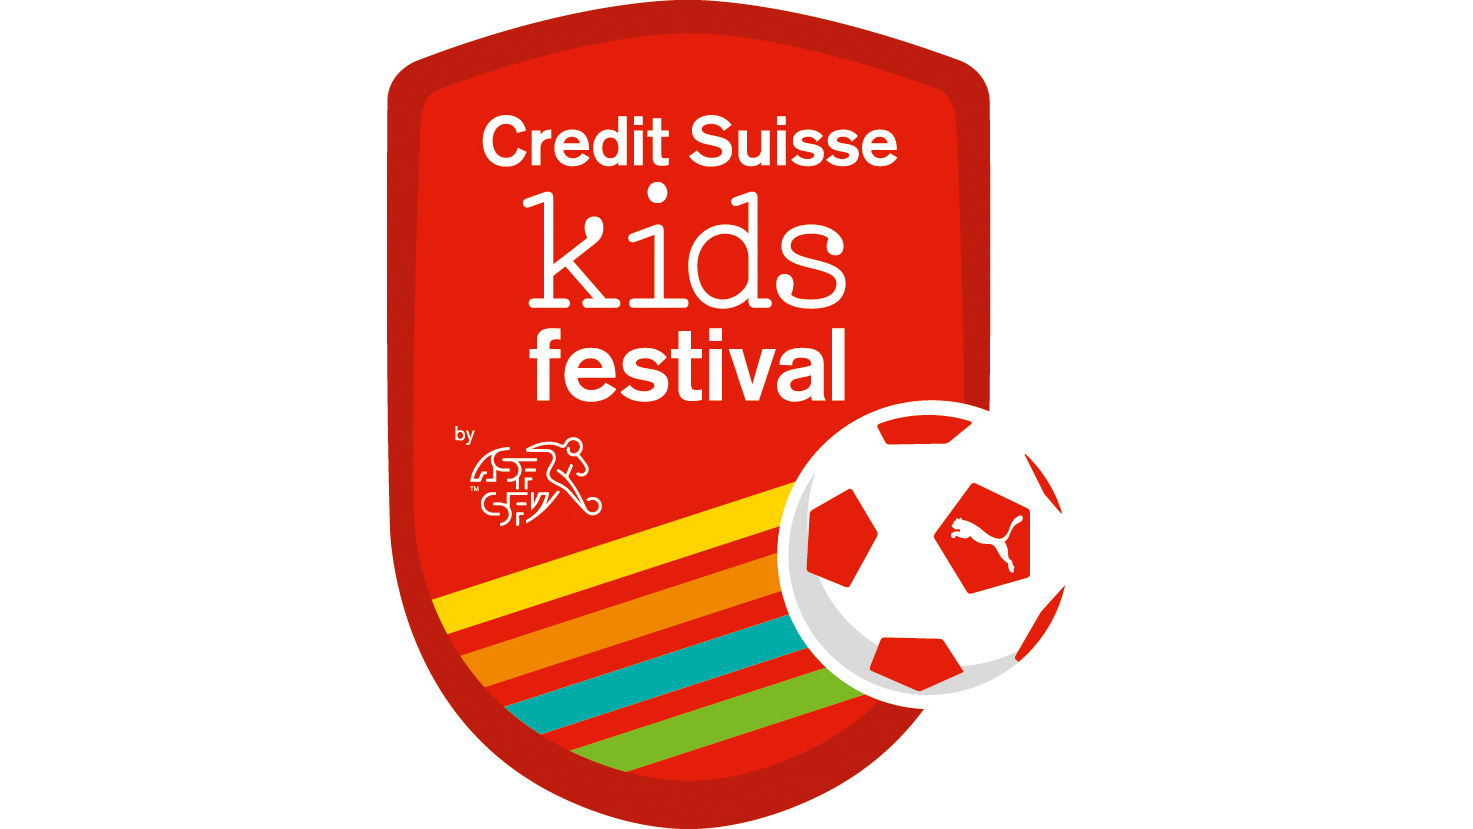 Das Credit Suisse Kids Festival kommt nach Widnau!